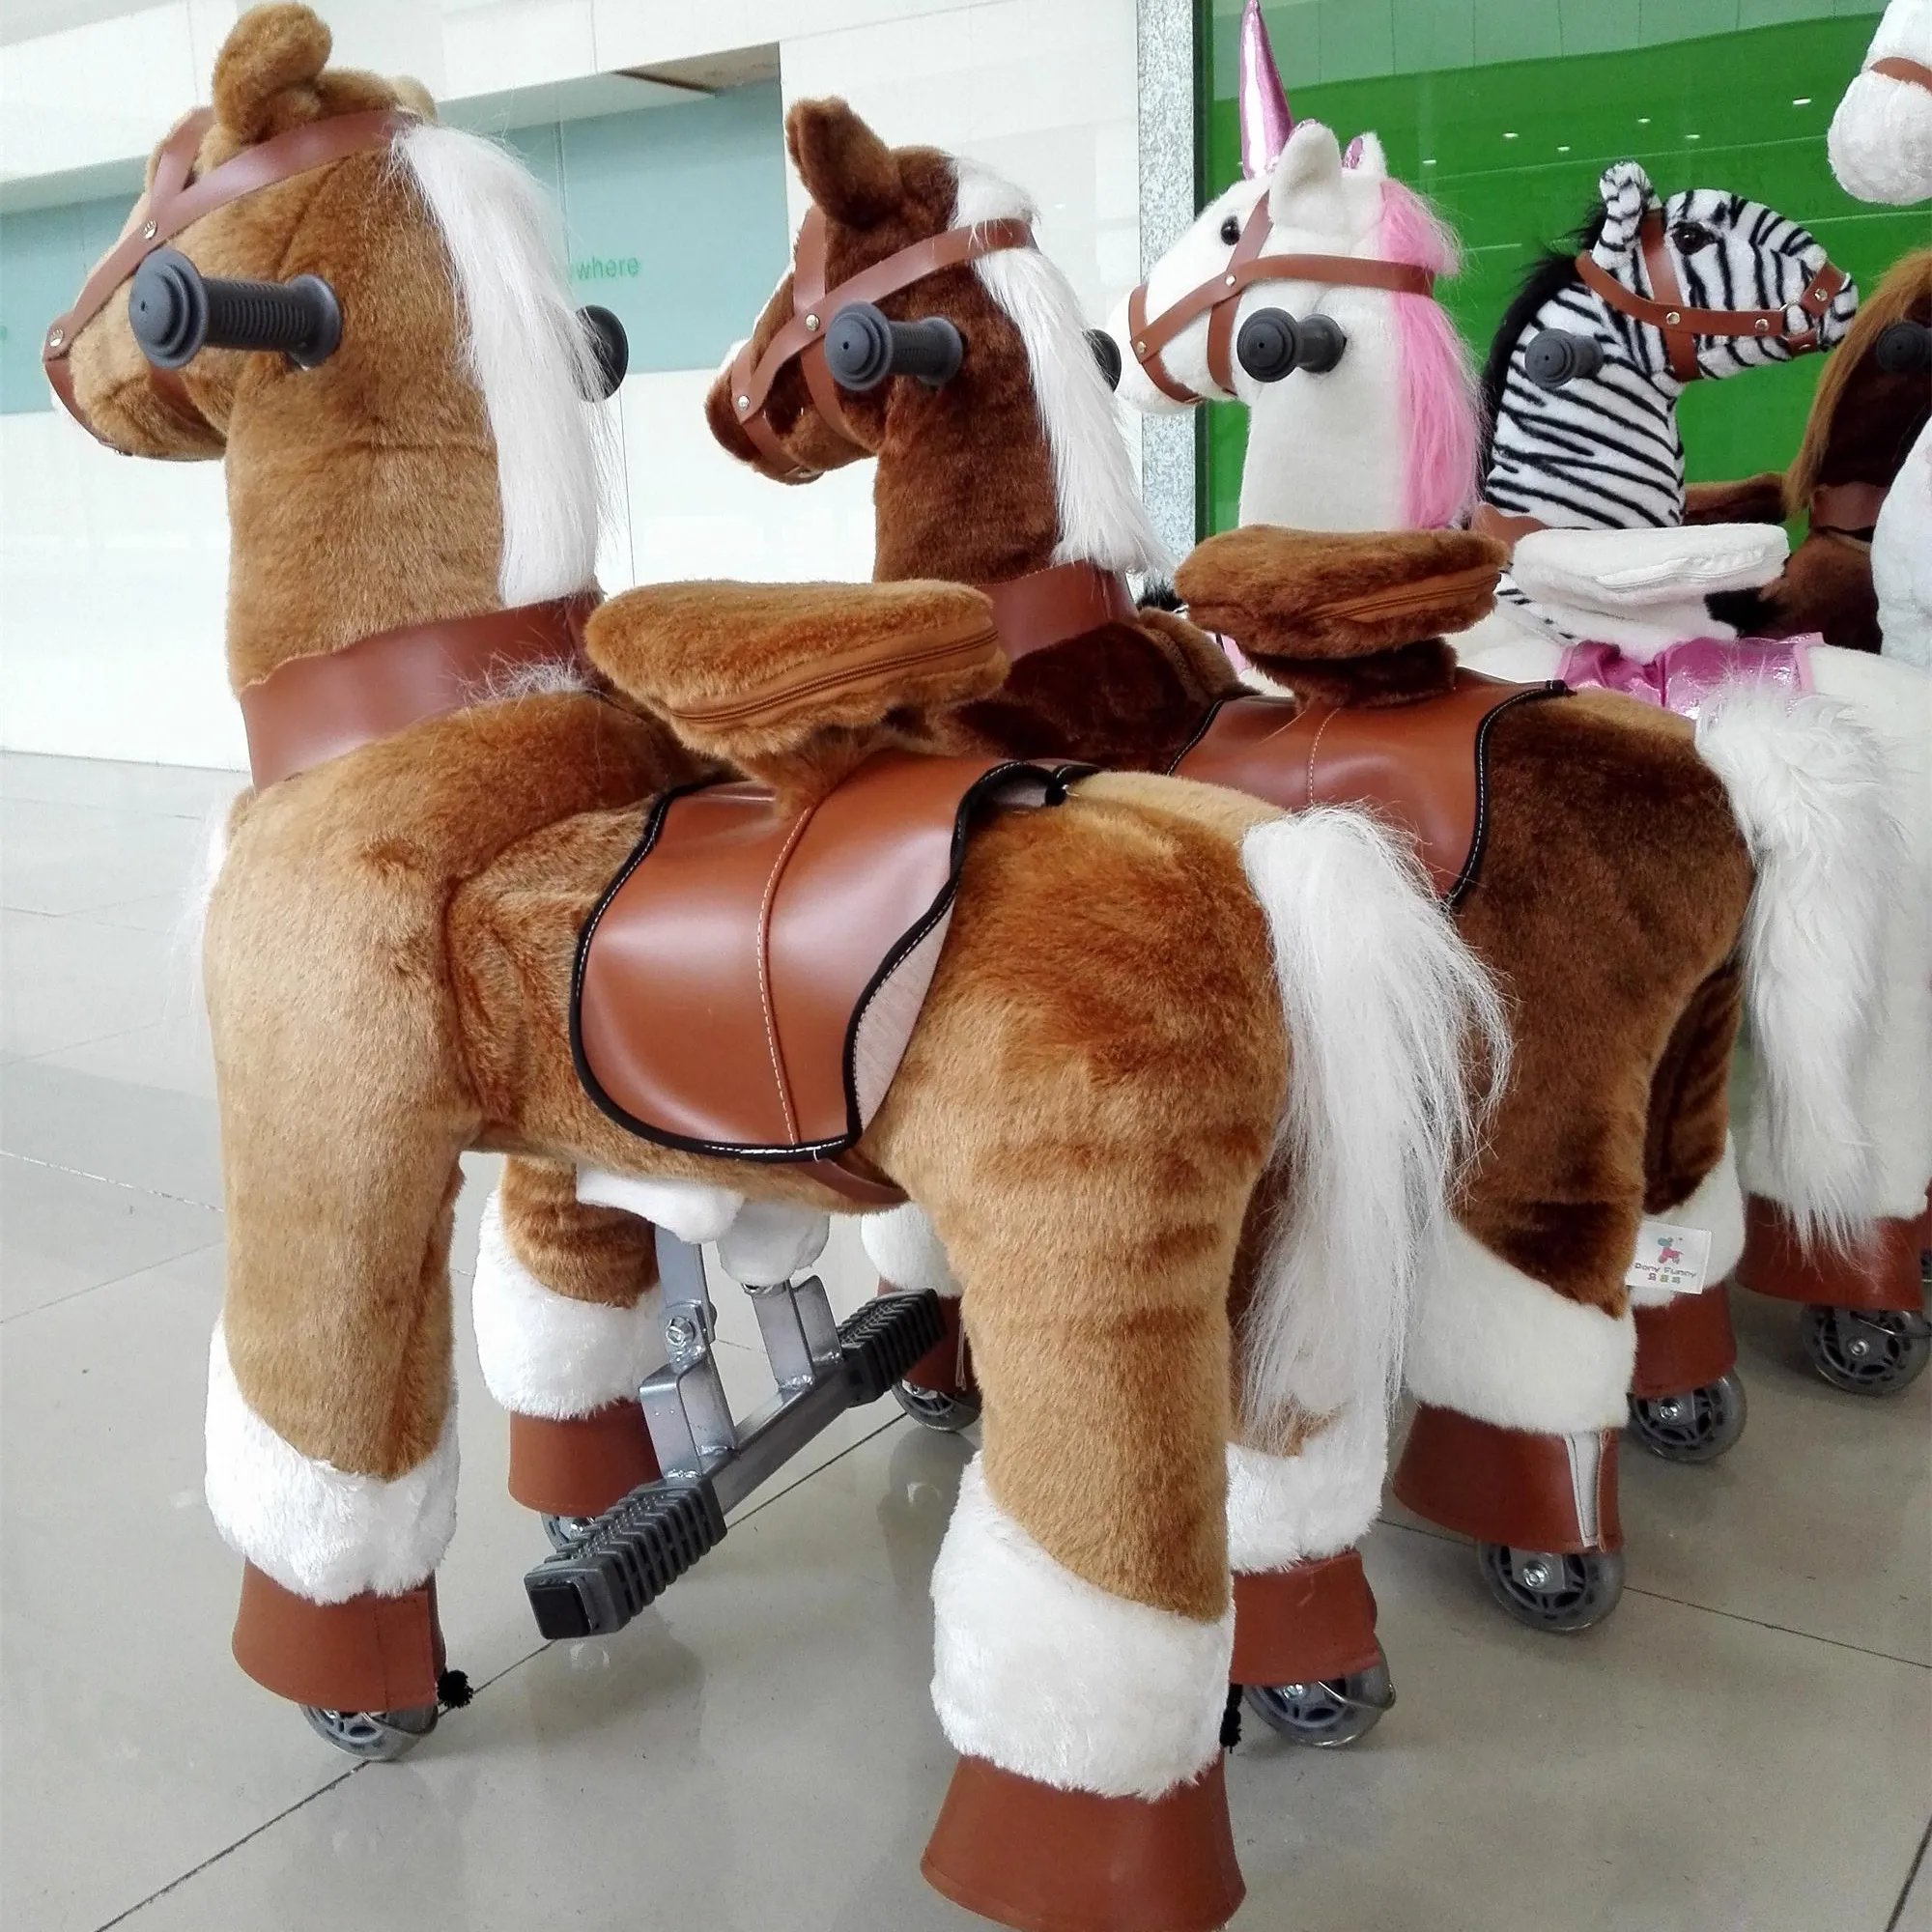 HI indoor speeltuin mooie knuffels mechanische rit op paard speelgoed pony